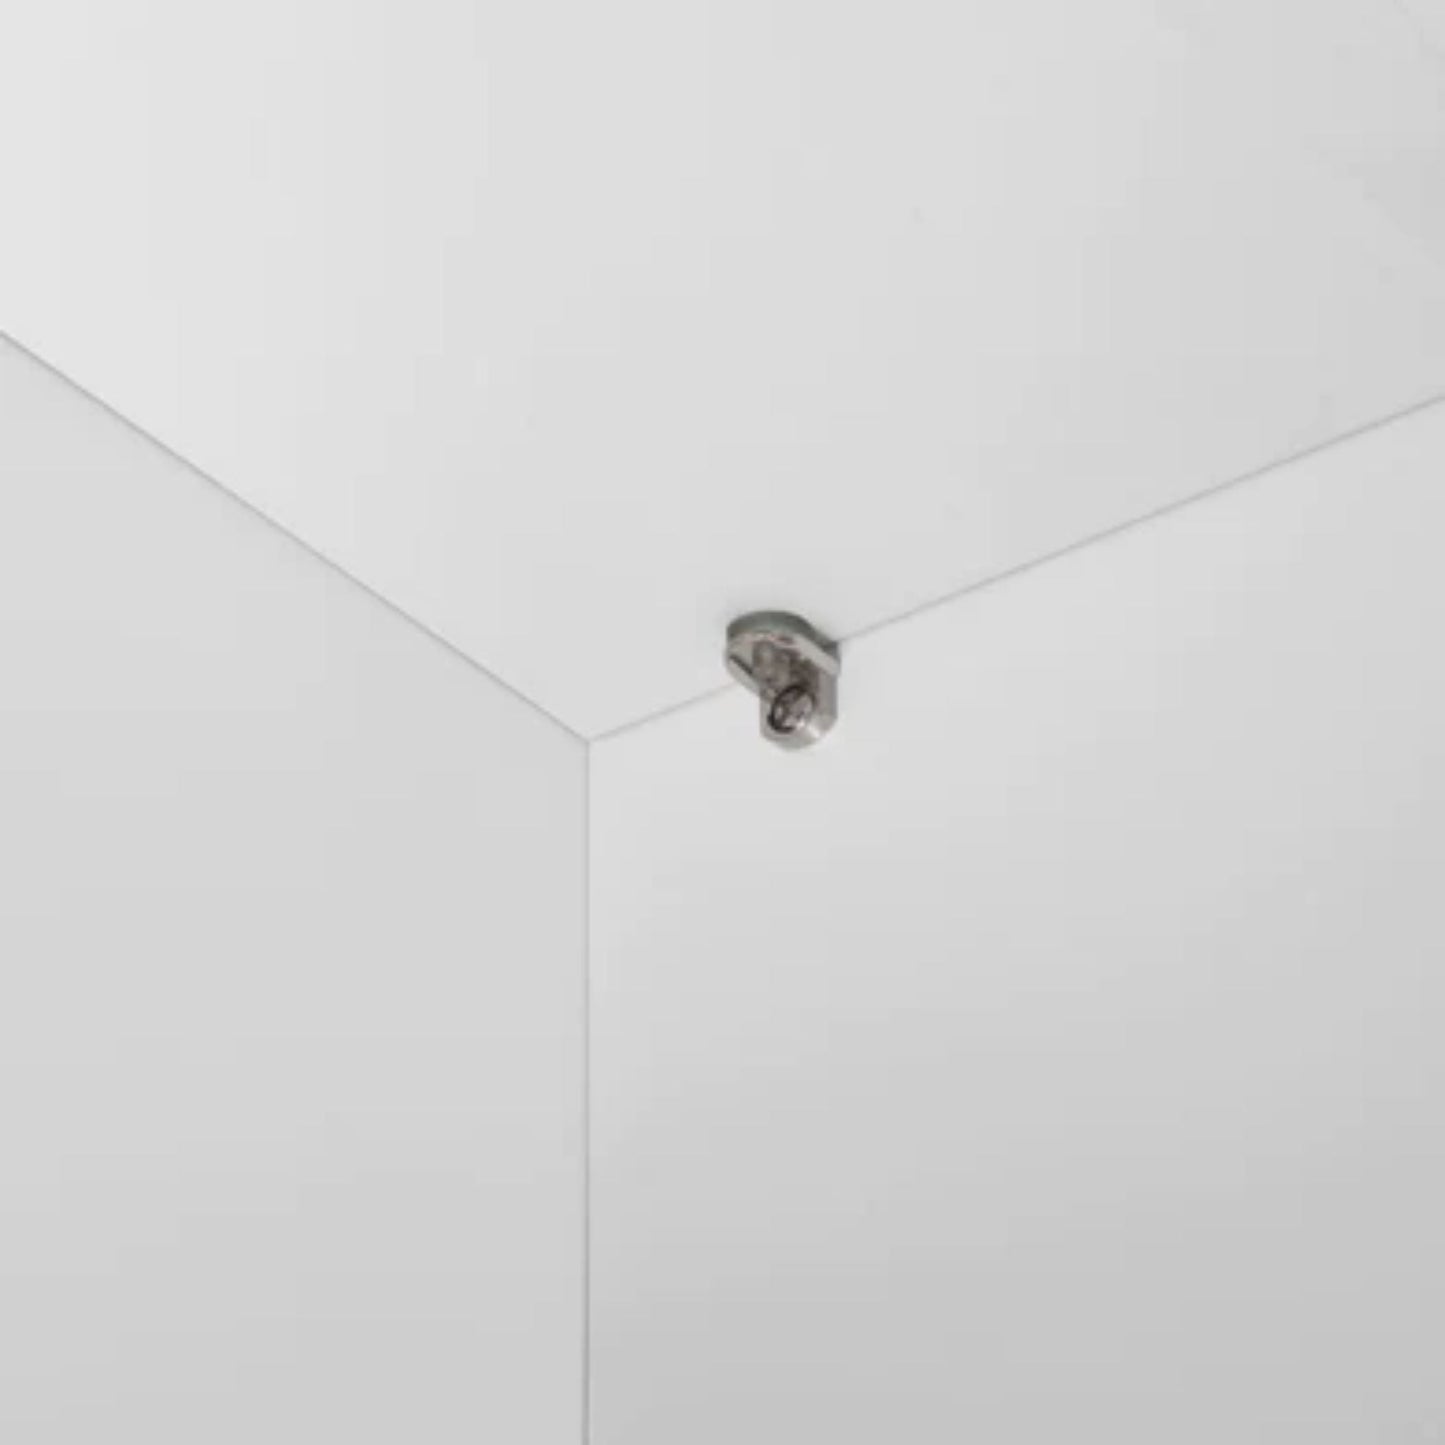 LessCare 30" x 24" x 12" Alpina White Wall Kitchen Cabinet - W3024